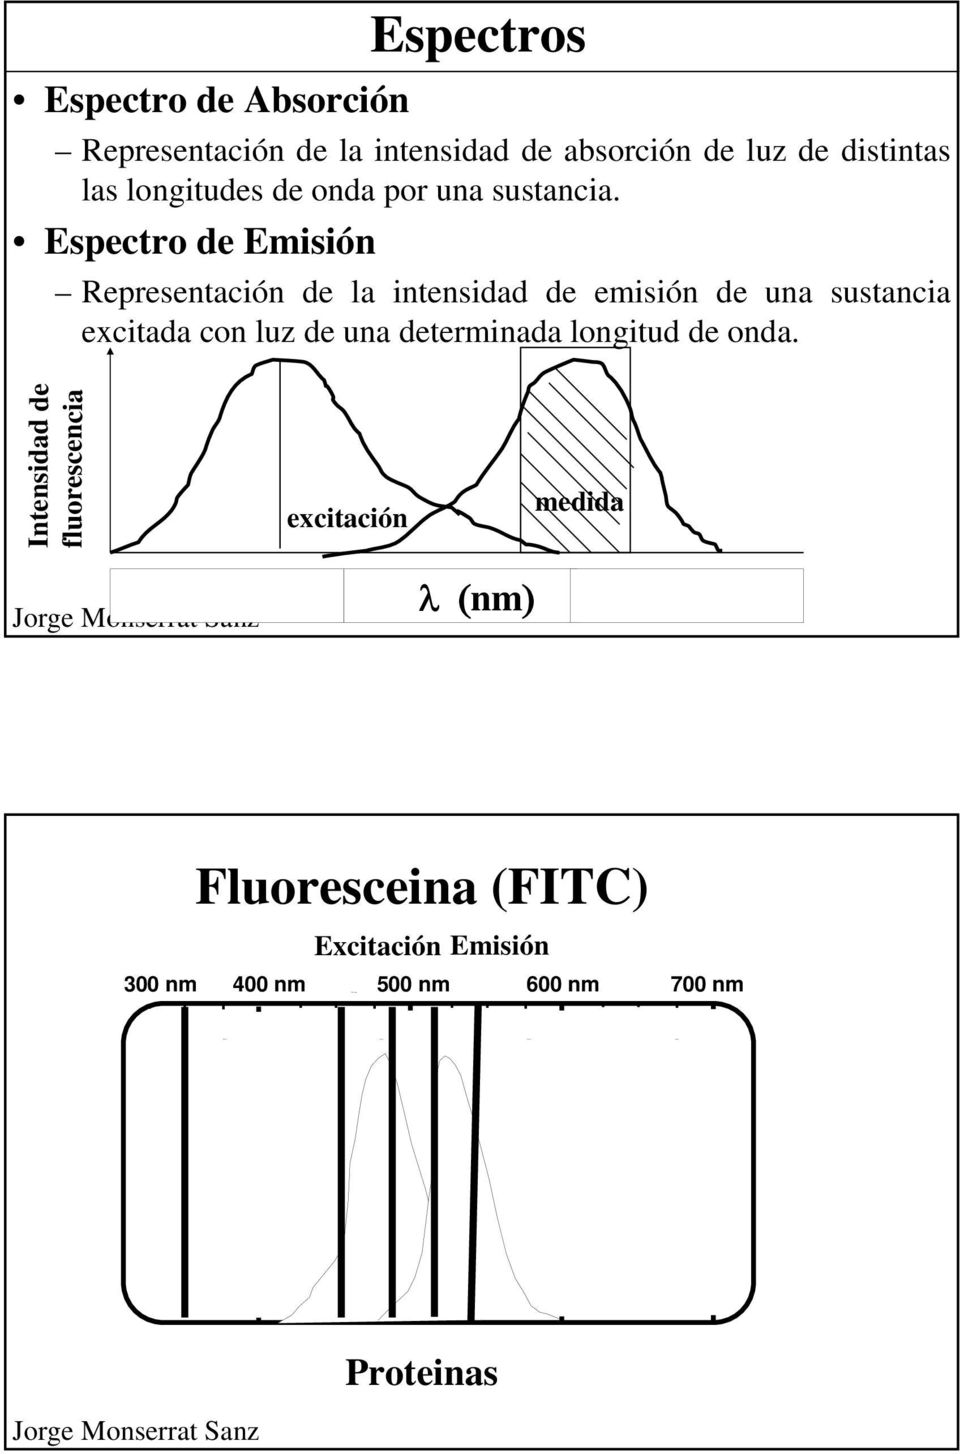 Representación de la intensidad de emisión de una sustancia excitada con luz de una determinada longitud de onda